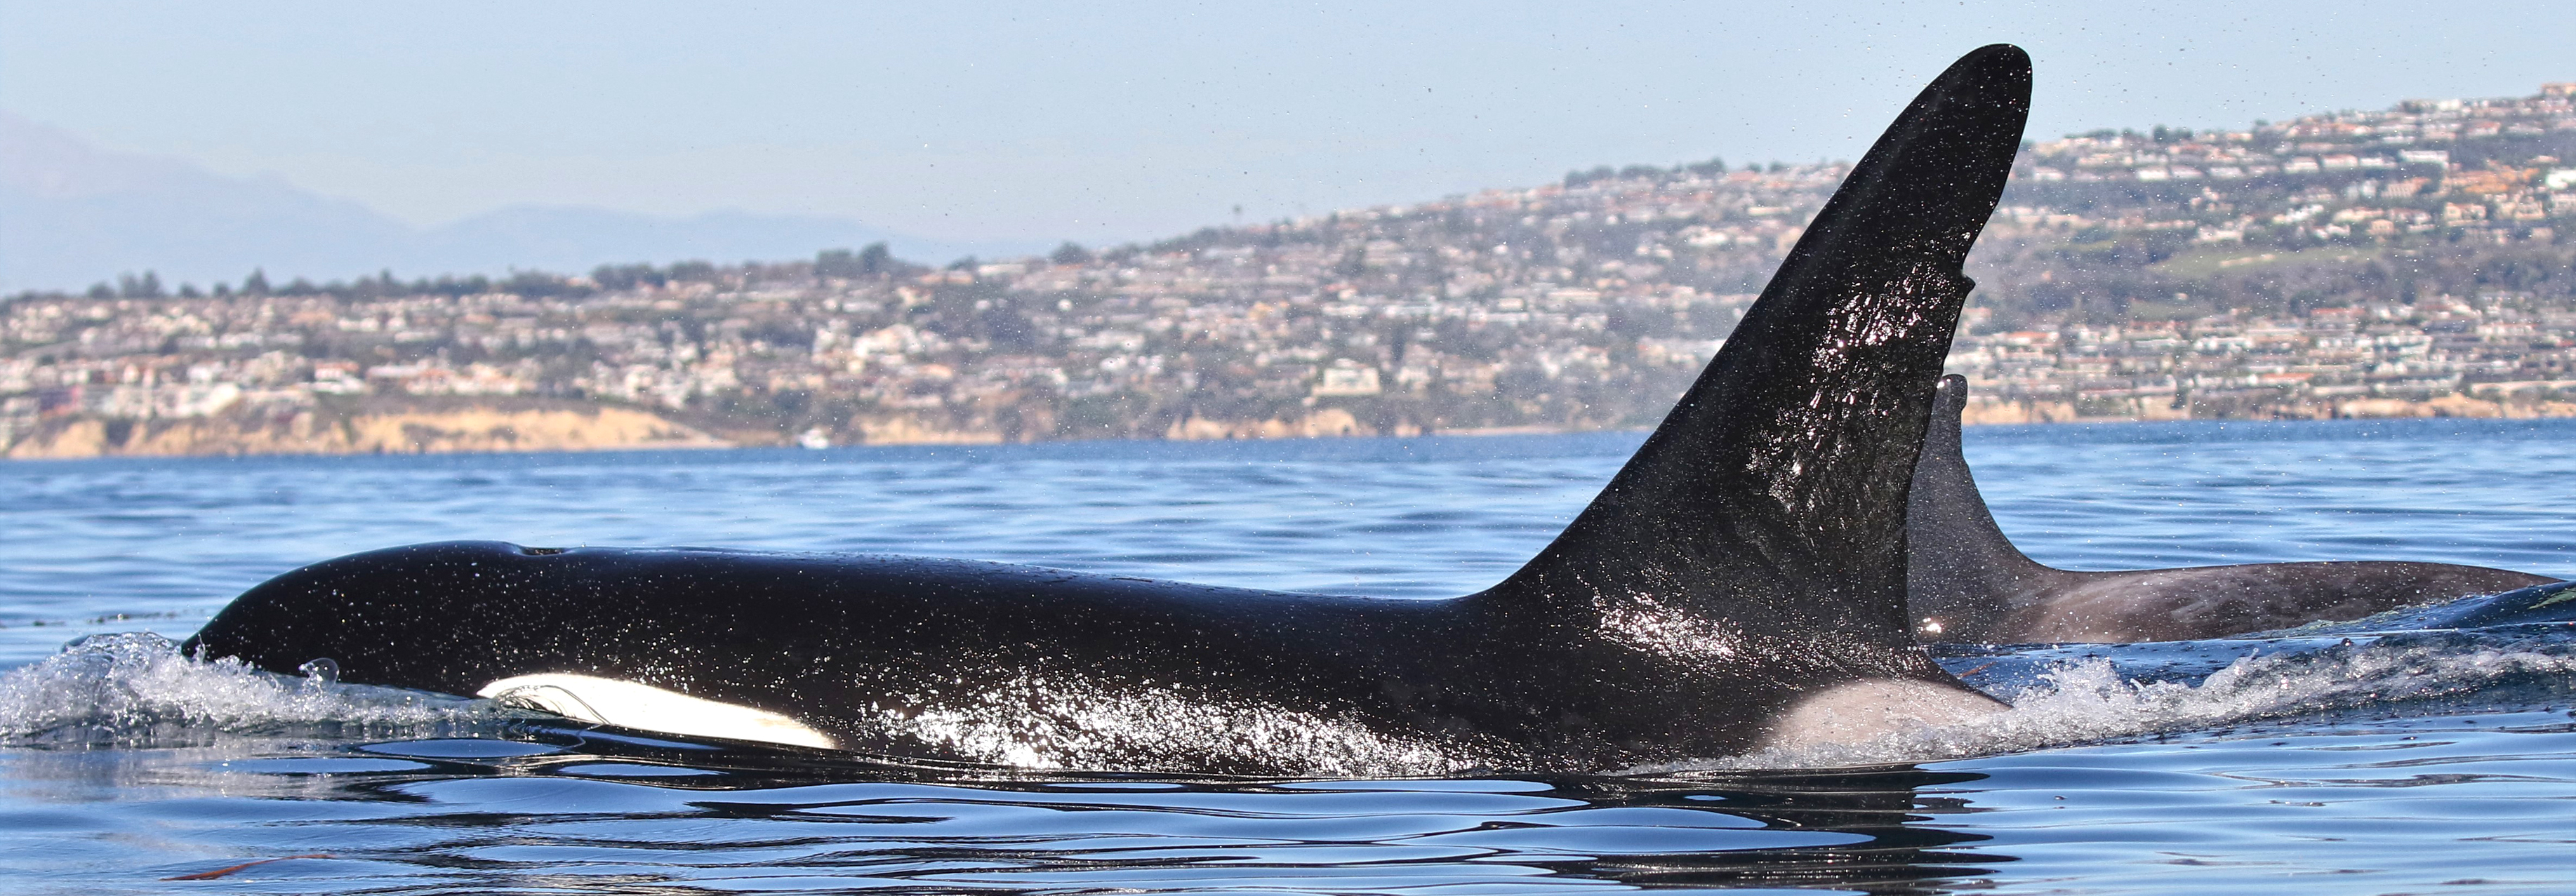 Orca, Killer Whale